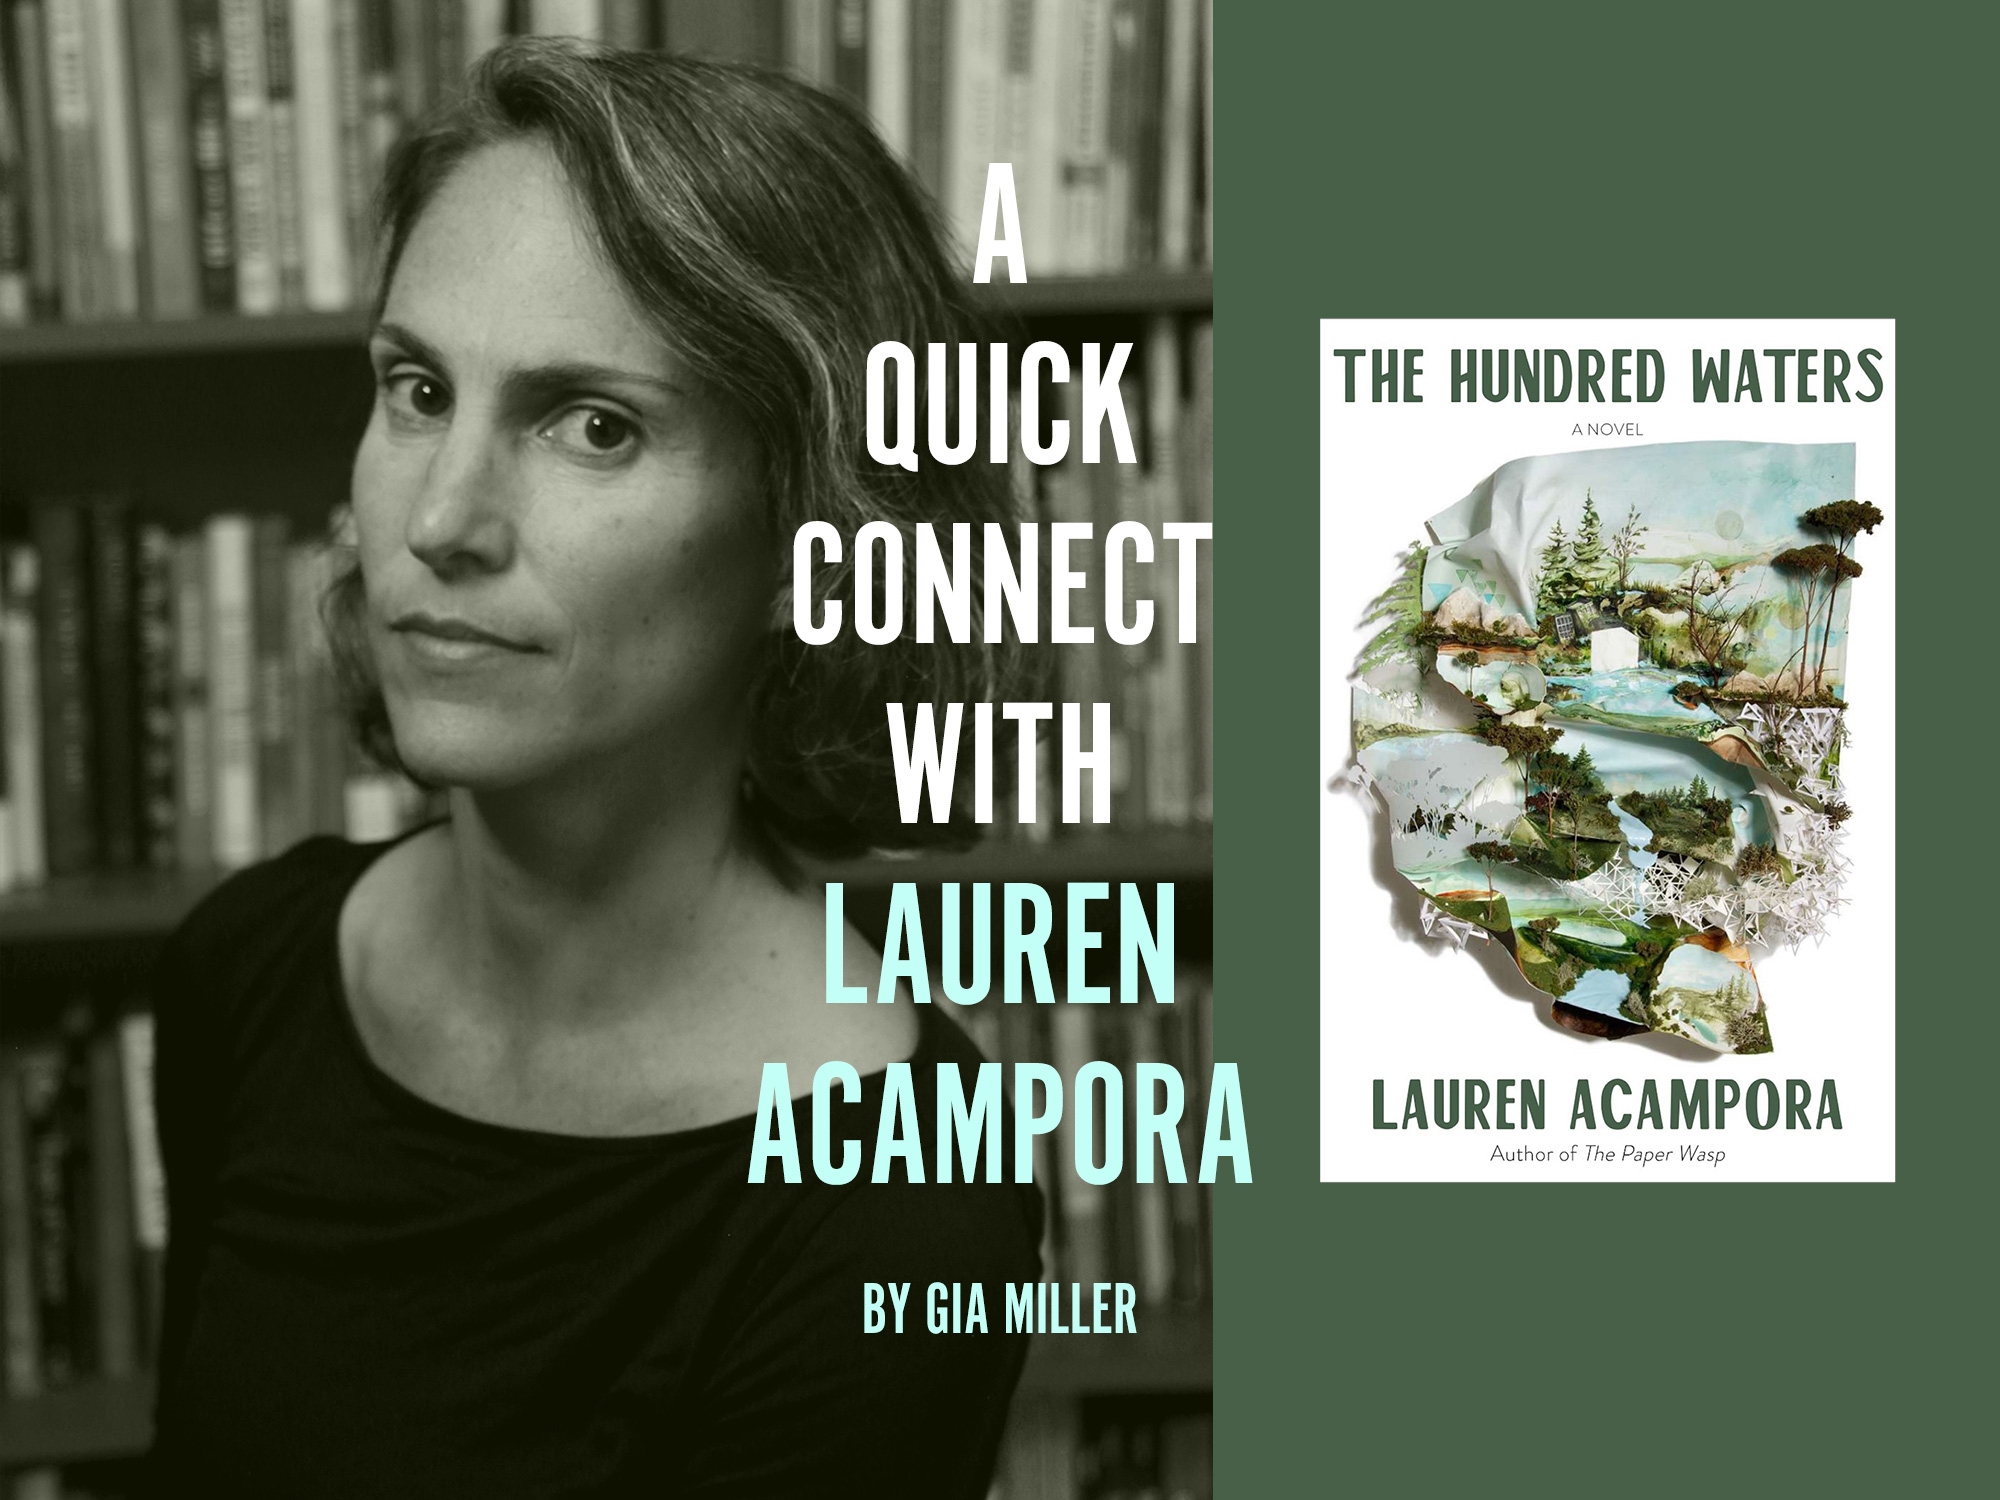 A Quick Connect with ... Lauren Acampora